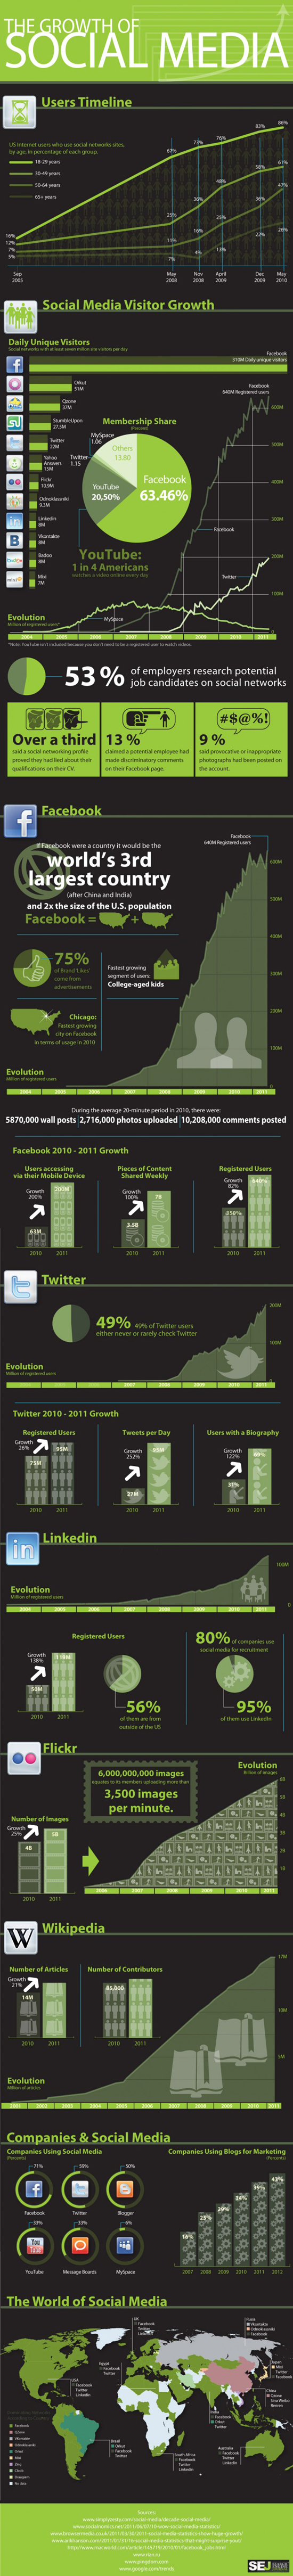 Growth of social media